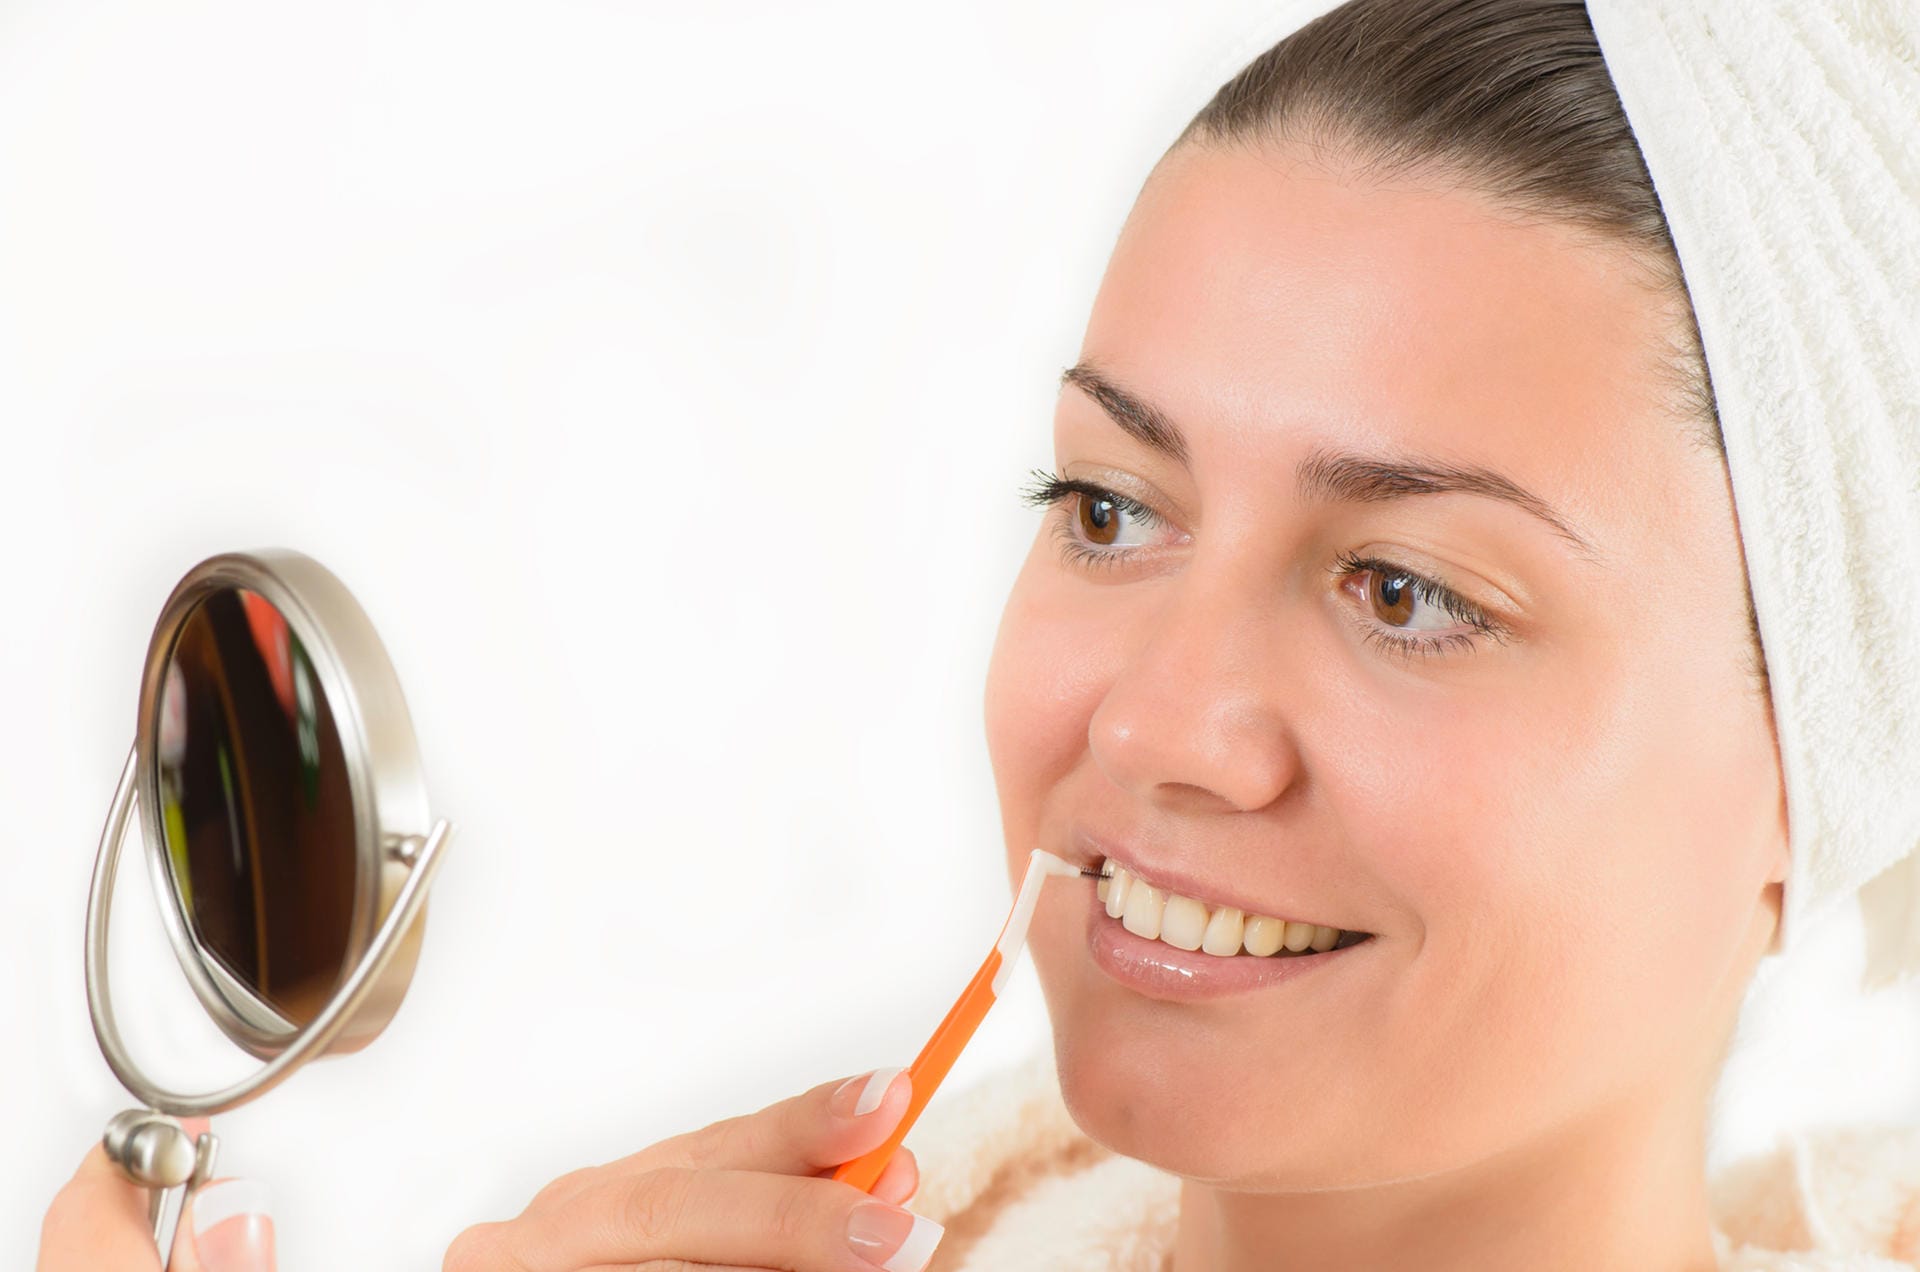 Die Zahnzwischenraumbürste (Interdentalbürste) hat nur eine Borstenreihe. Sie ist in verschiedenen Stärken erhältlich und daher besonders geeignet, um unterschiedlich breite Zahnzwischenräume zu reinigen. Nur bei sehr eng stehenden Zähnen ist die Verwendung nicht möglich. In diesem Fall können Sie auf Zahnseide zurückgreifen.